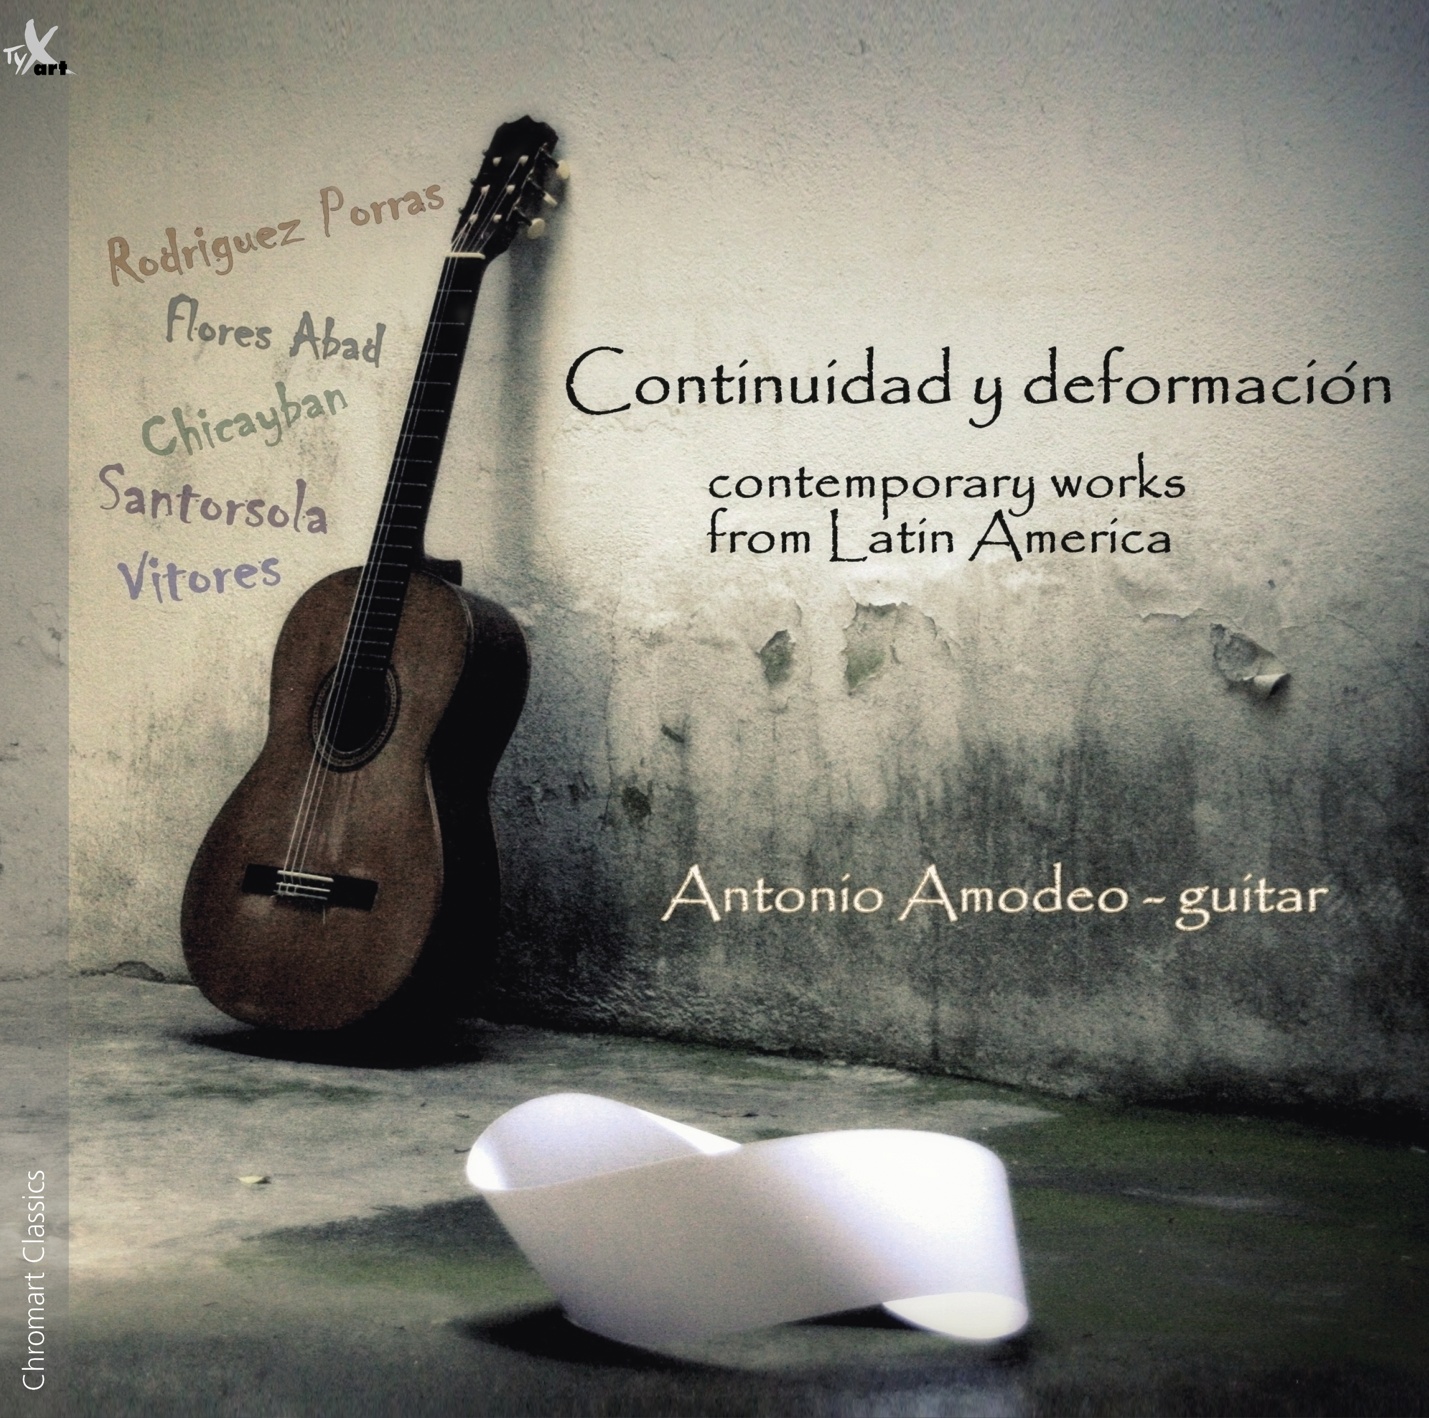 Continuidad y deformaciòn - Antonio Amodeo, Guitar